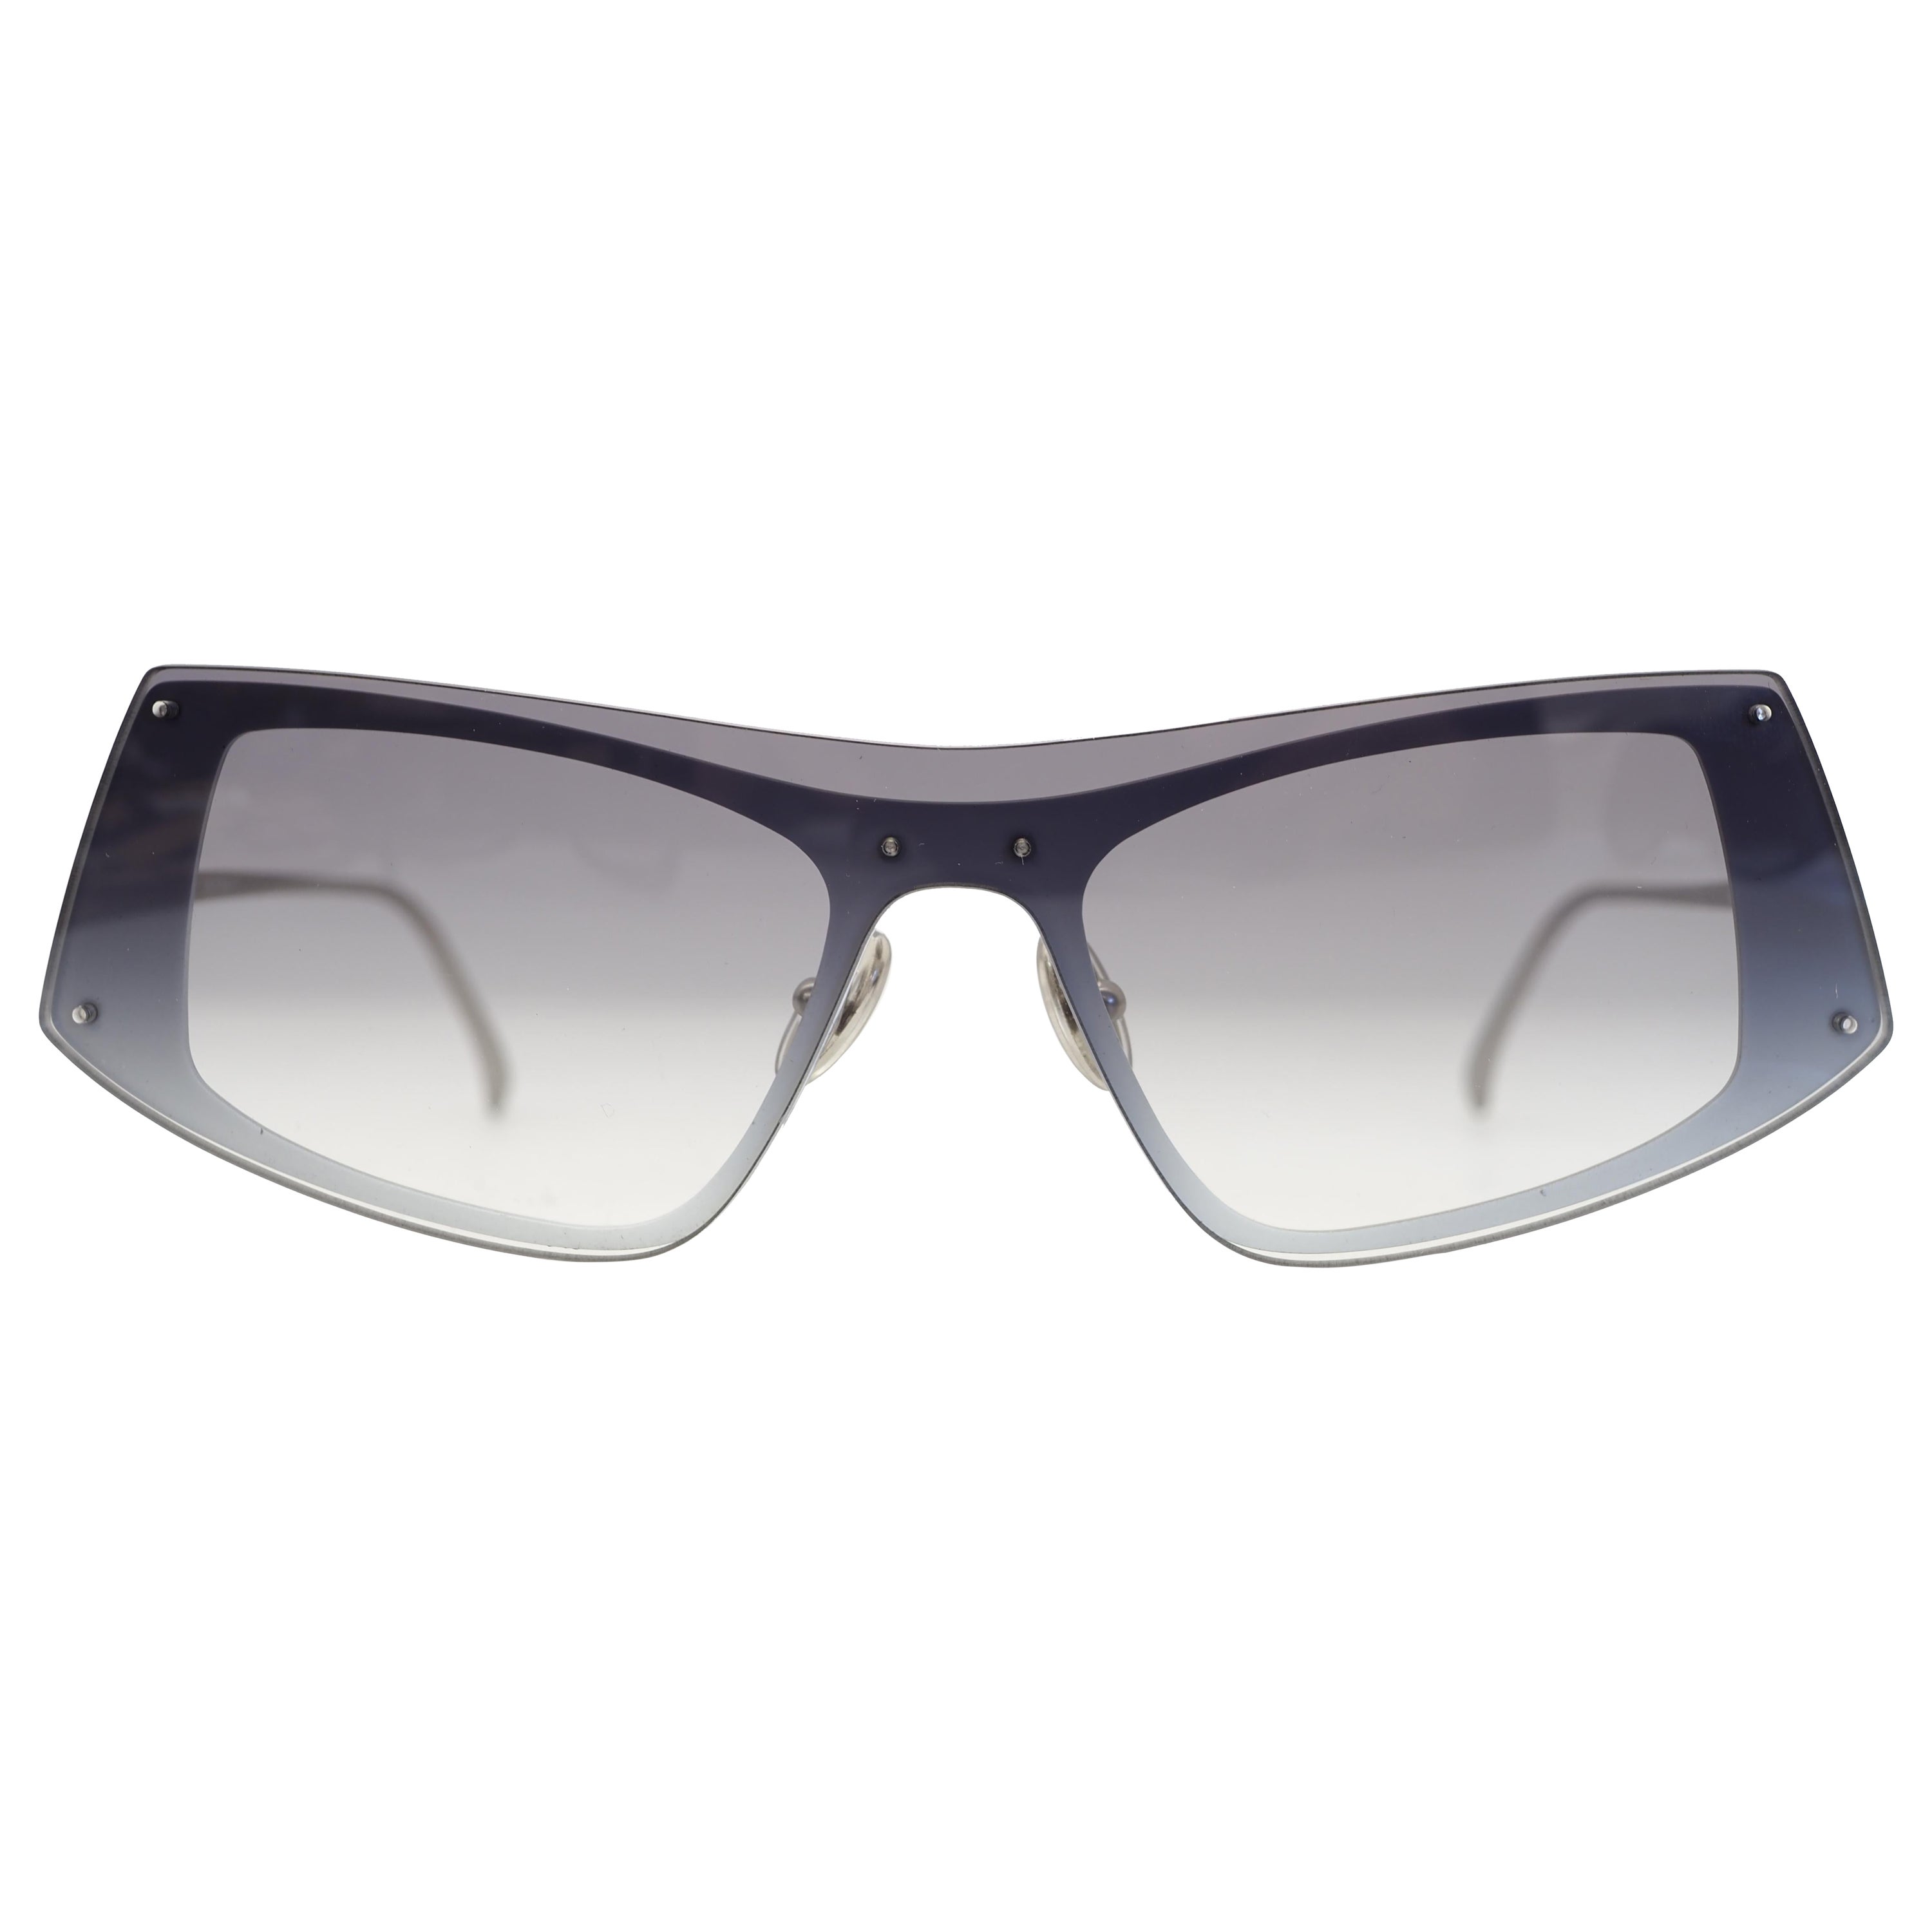 Sportmax sunglasses For Sale